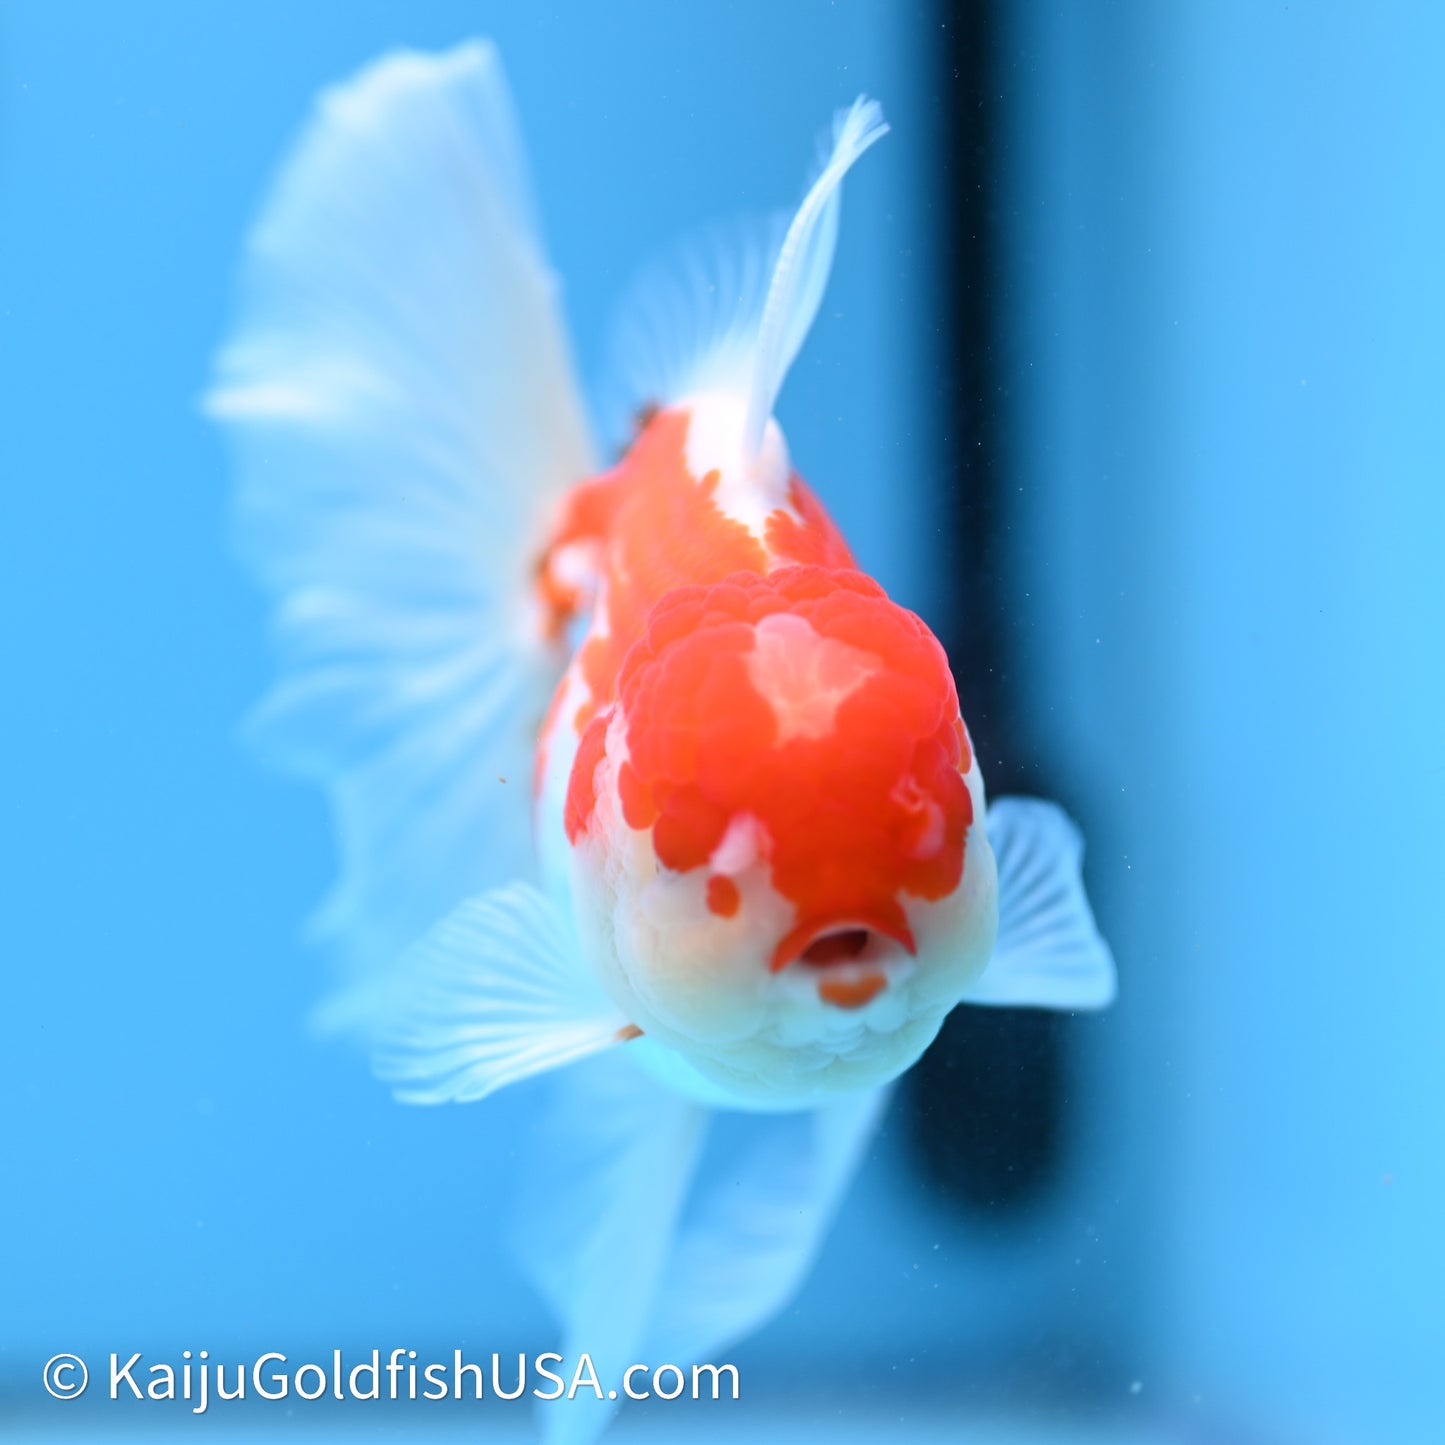 Jade Seal Red White Rose Tail Oranda 4in Body (240621_OR10) - Kaiju Goldfish USA